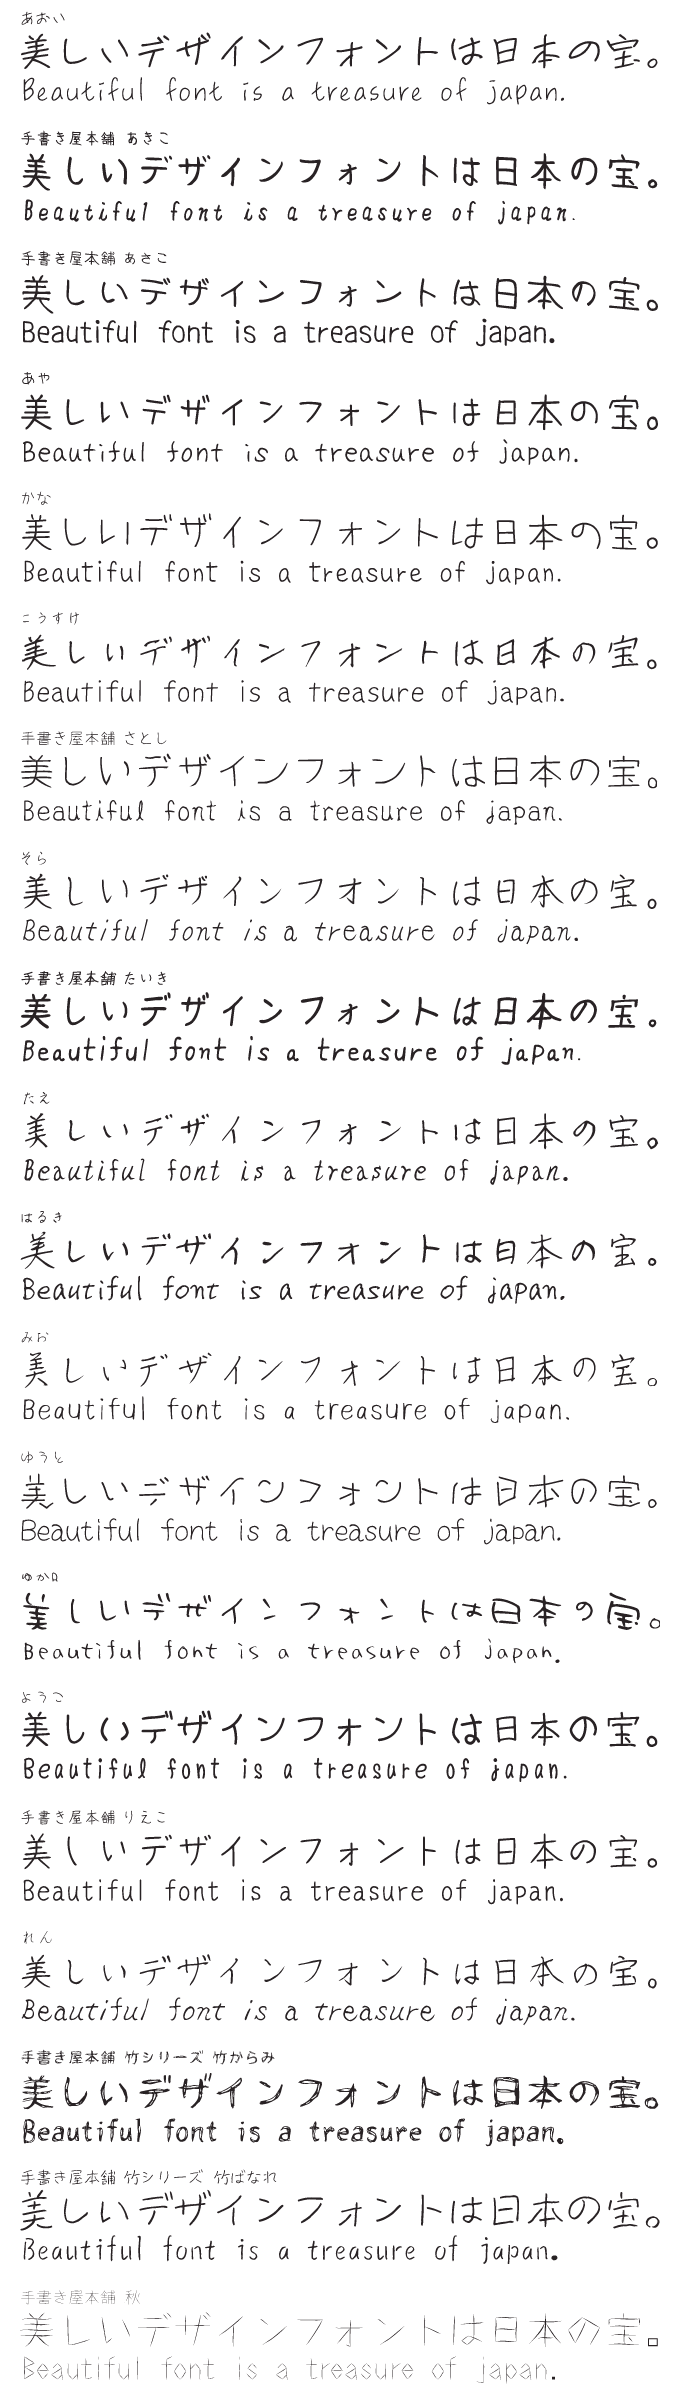 ナチュラルでおしゃれな手書き日本語フォント20書体セット 収録書体見本